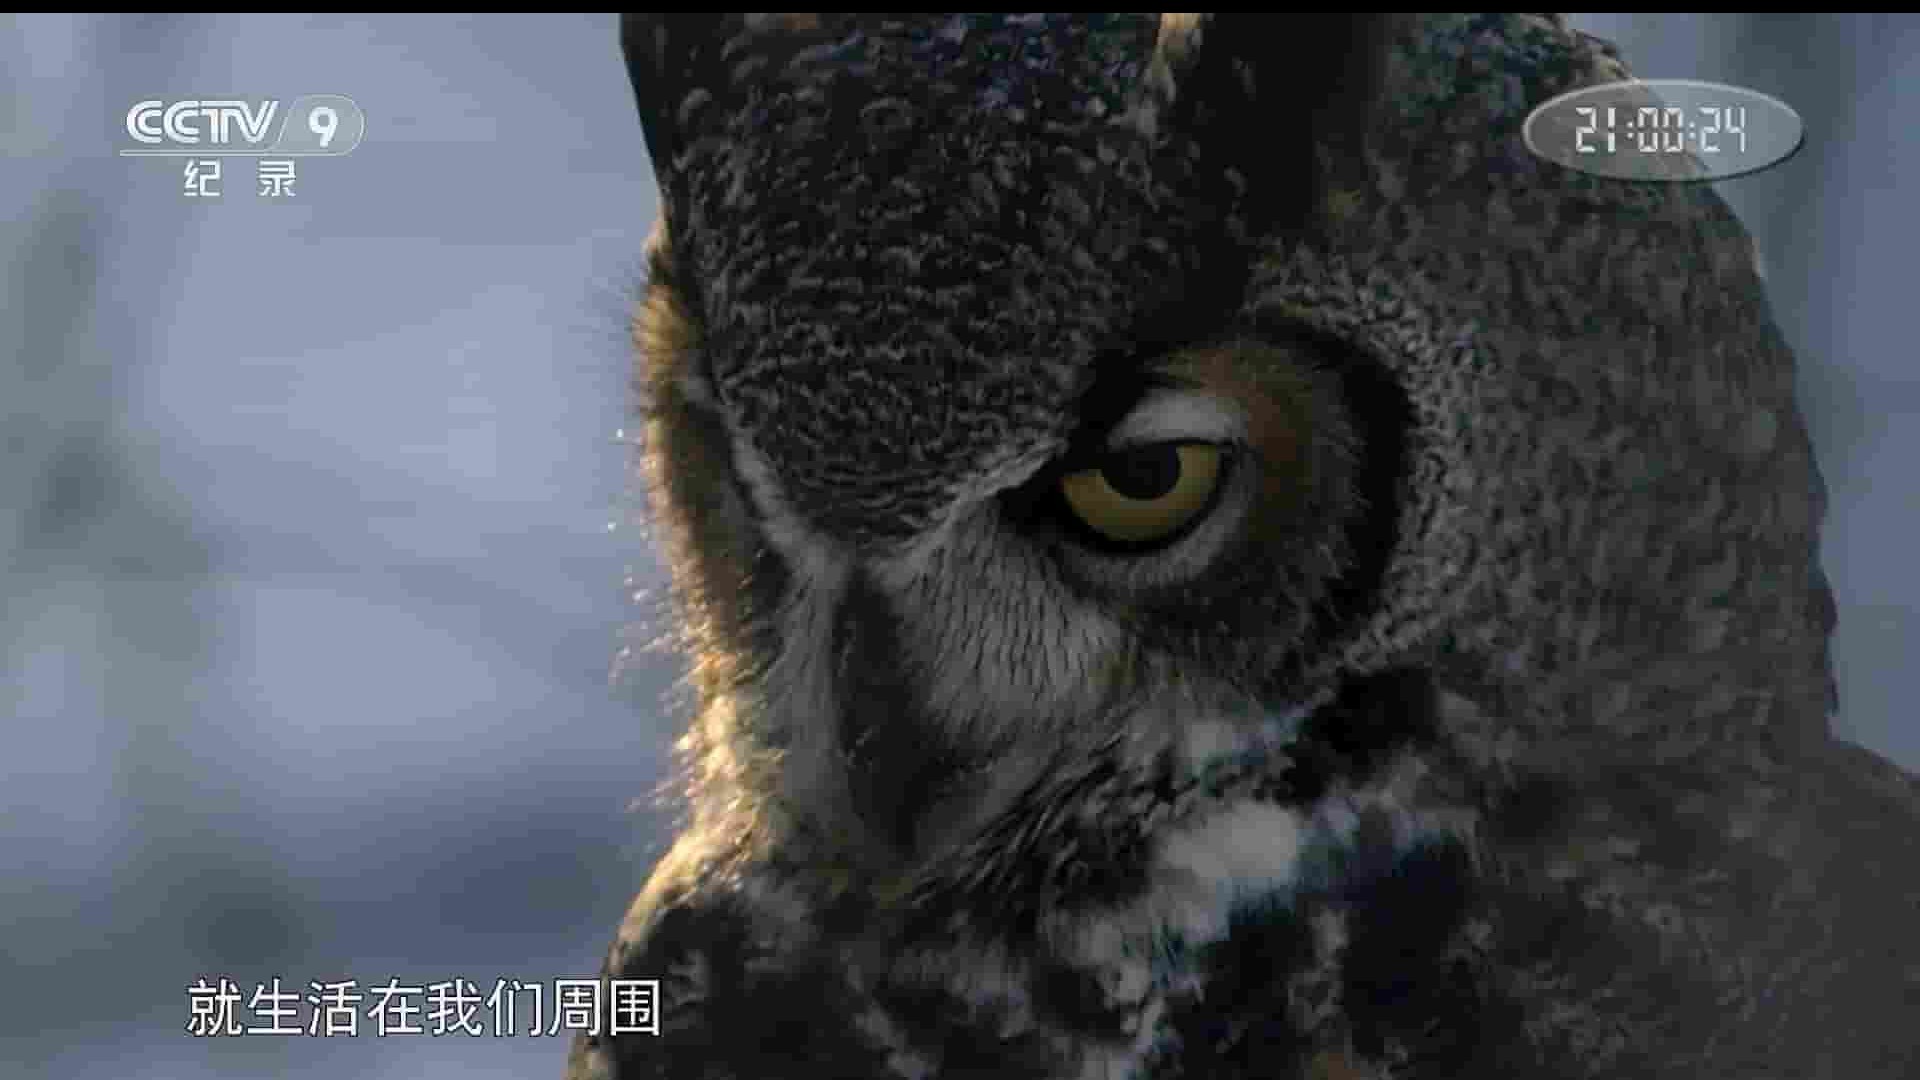 央视纪录片《猫头鹰的秘密生活 The Secret Life of Owls 2017》全1集 国语中字 1080i高清网盘下载